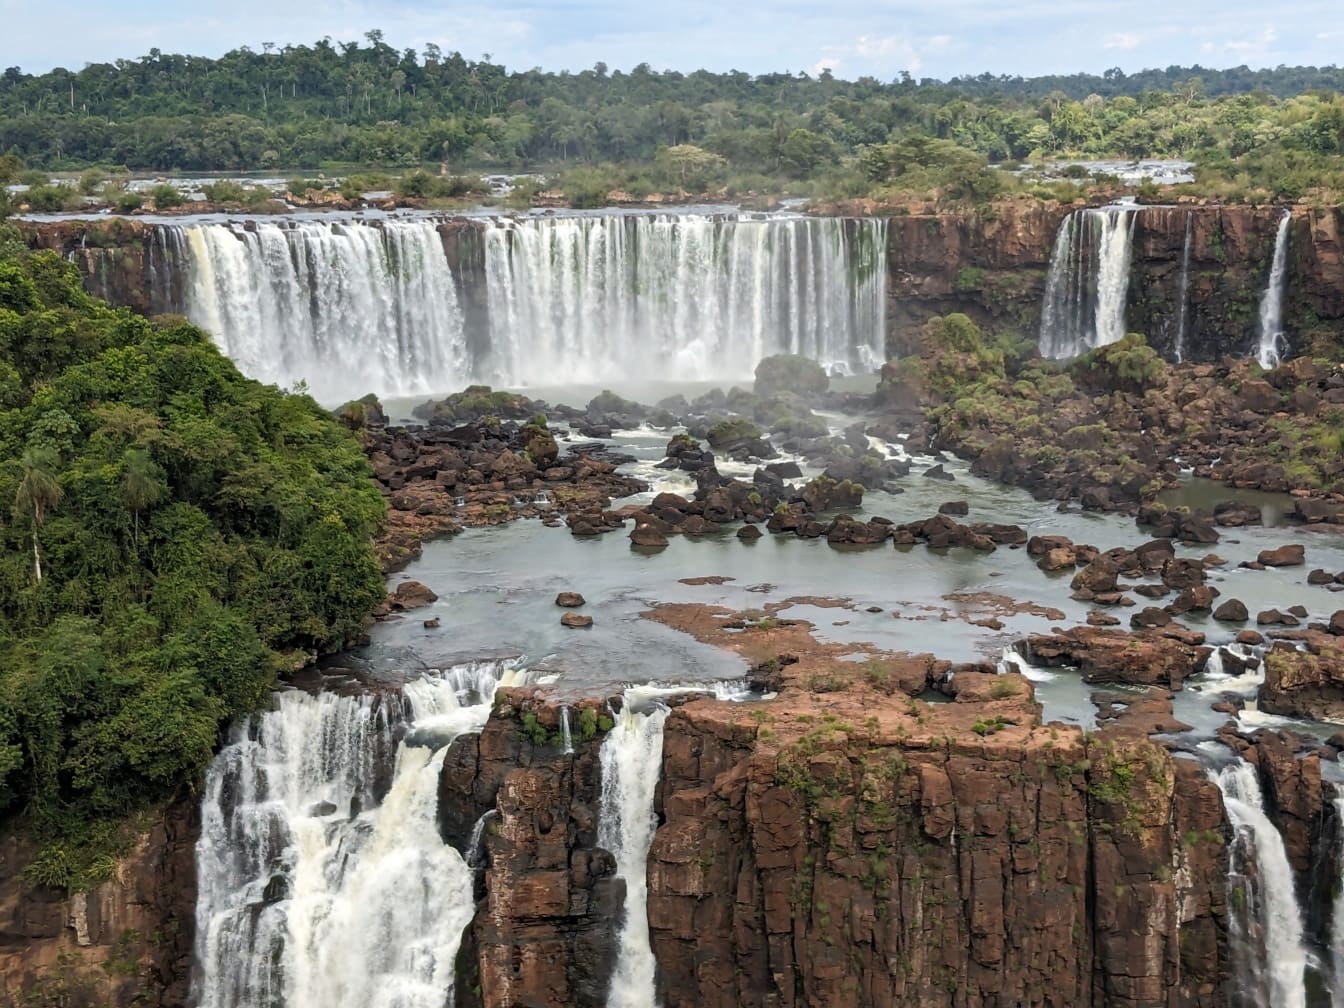 Magnífico panorama do lado brasileiro da cachoeira no Rio Iguaçu, natureza intocada em sua beleza